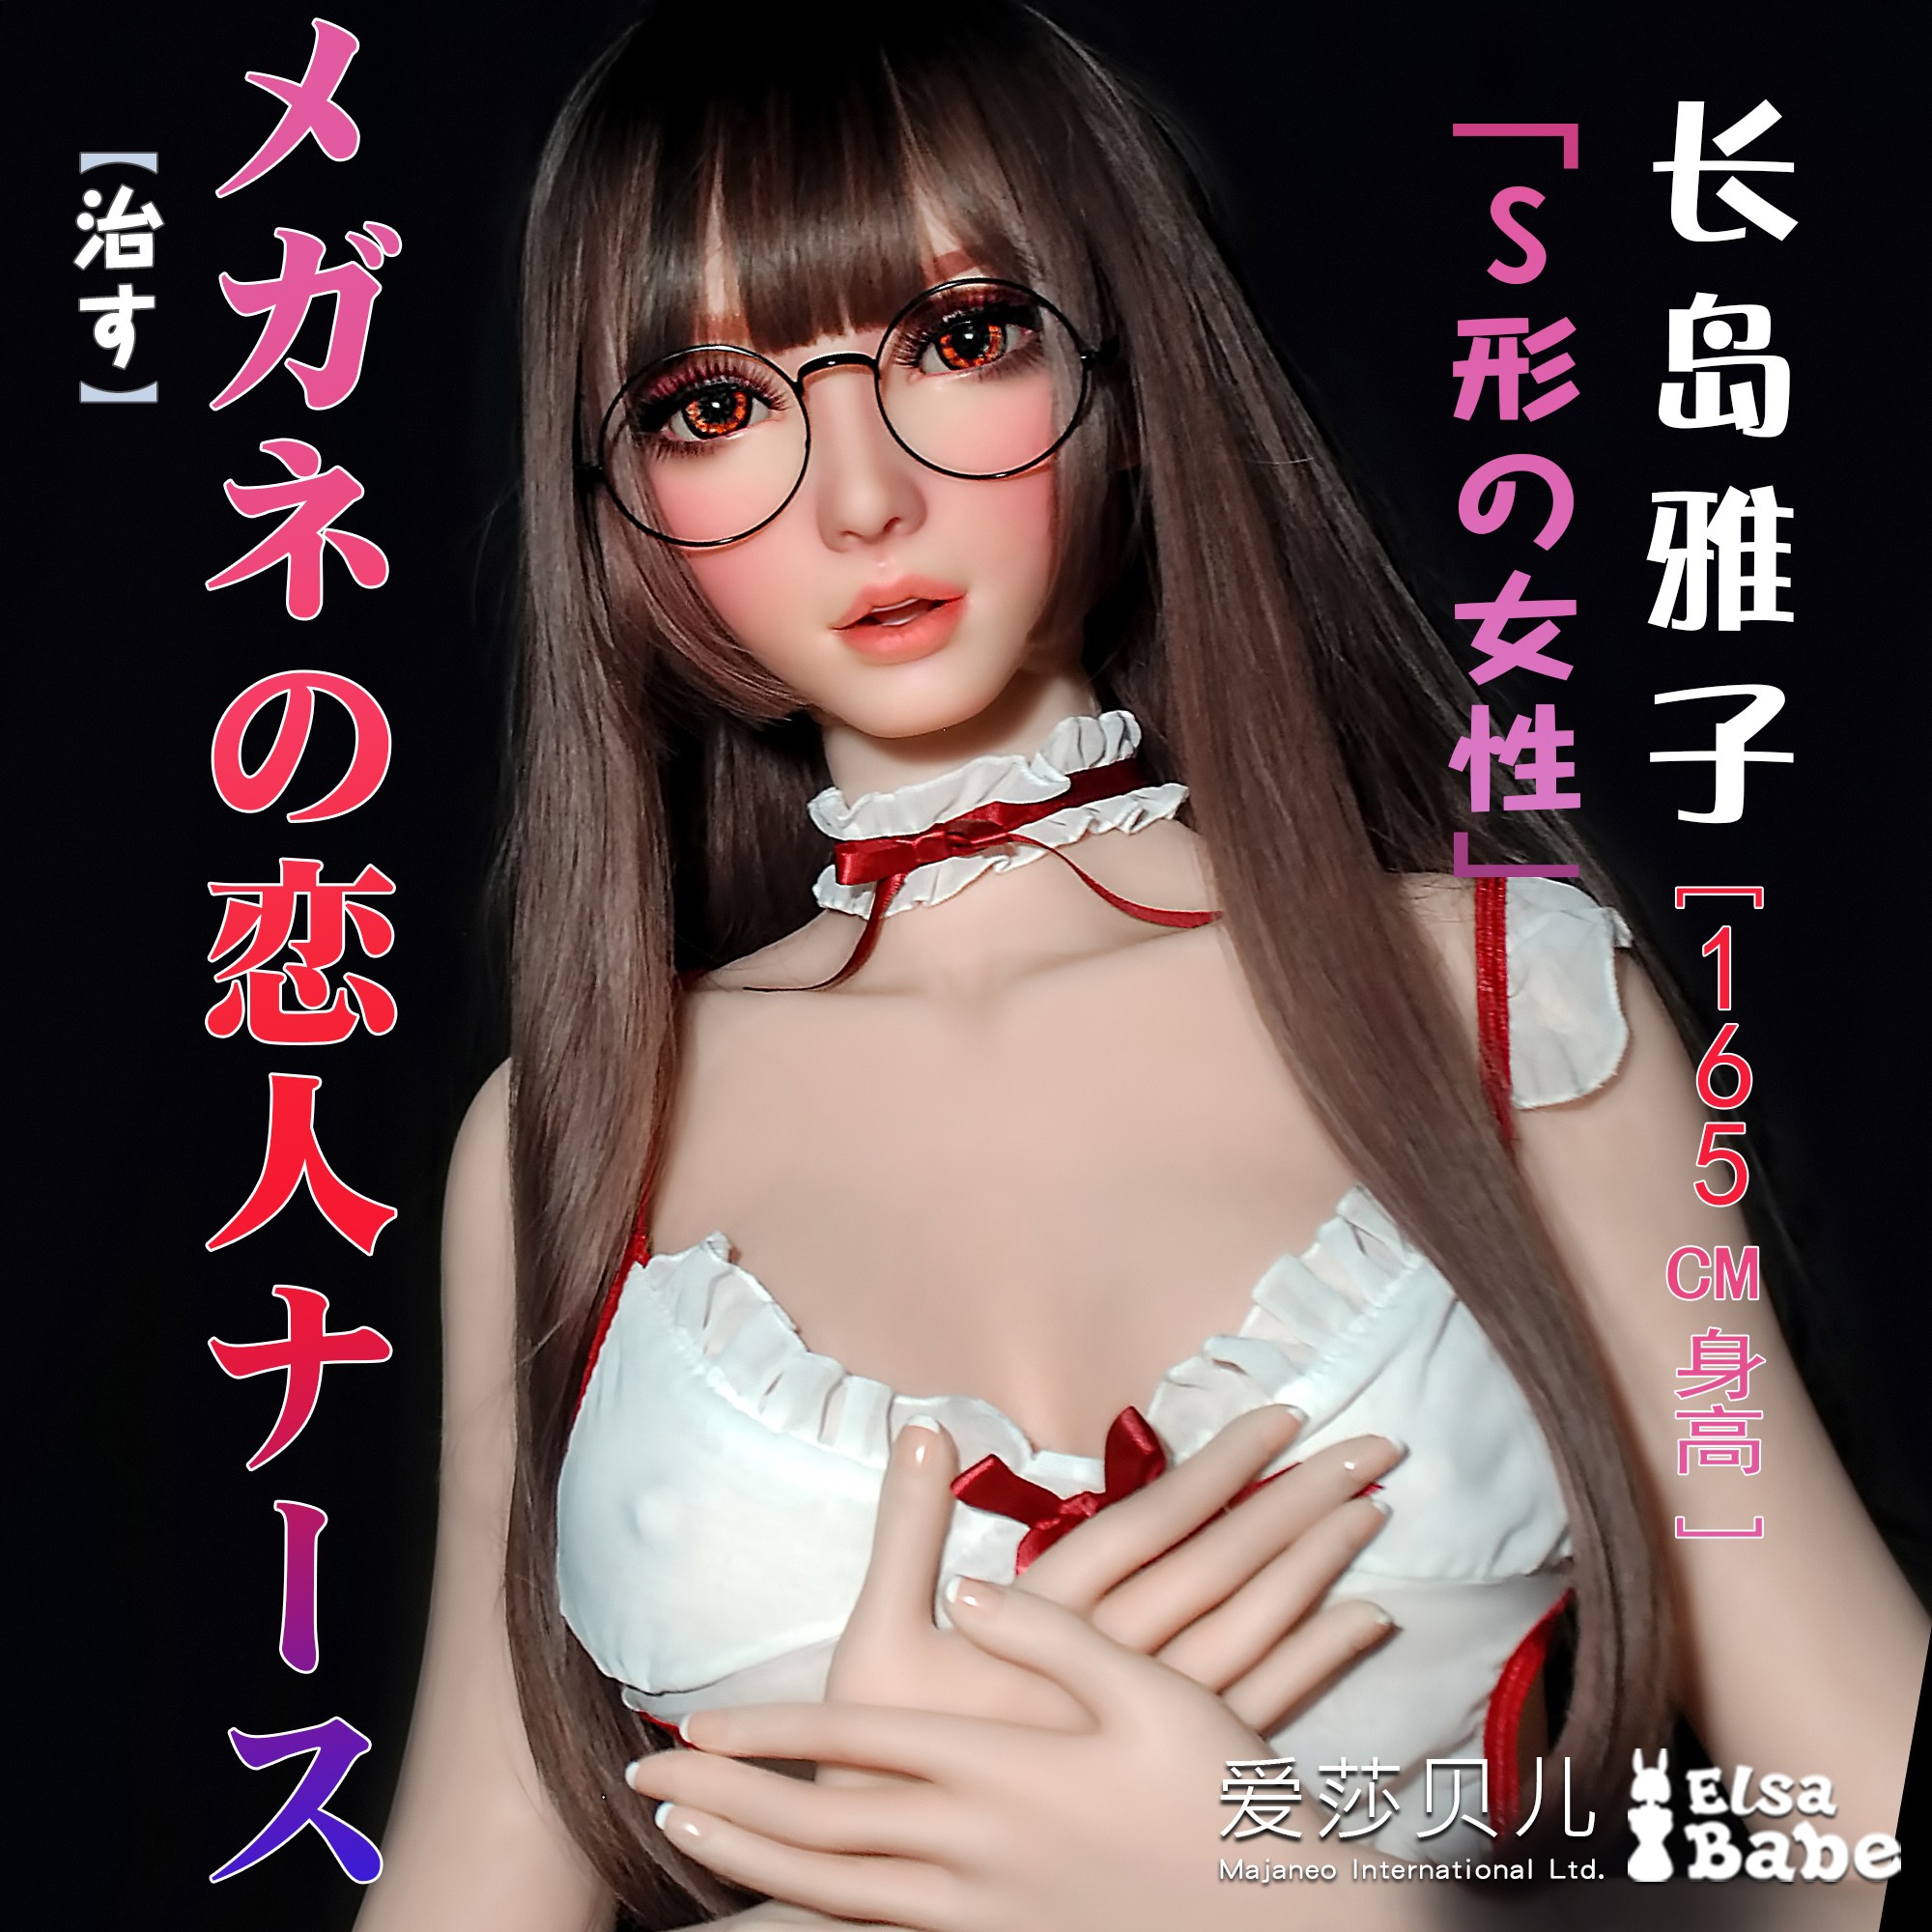 ElsaBabe Head of 165cm Platinum Silicone Sex Doll, Nagashima Masako